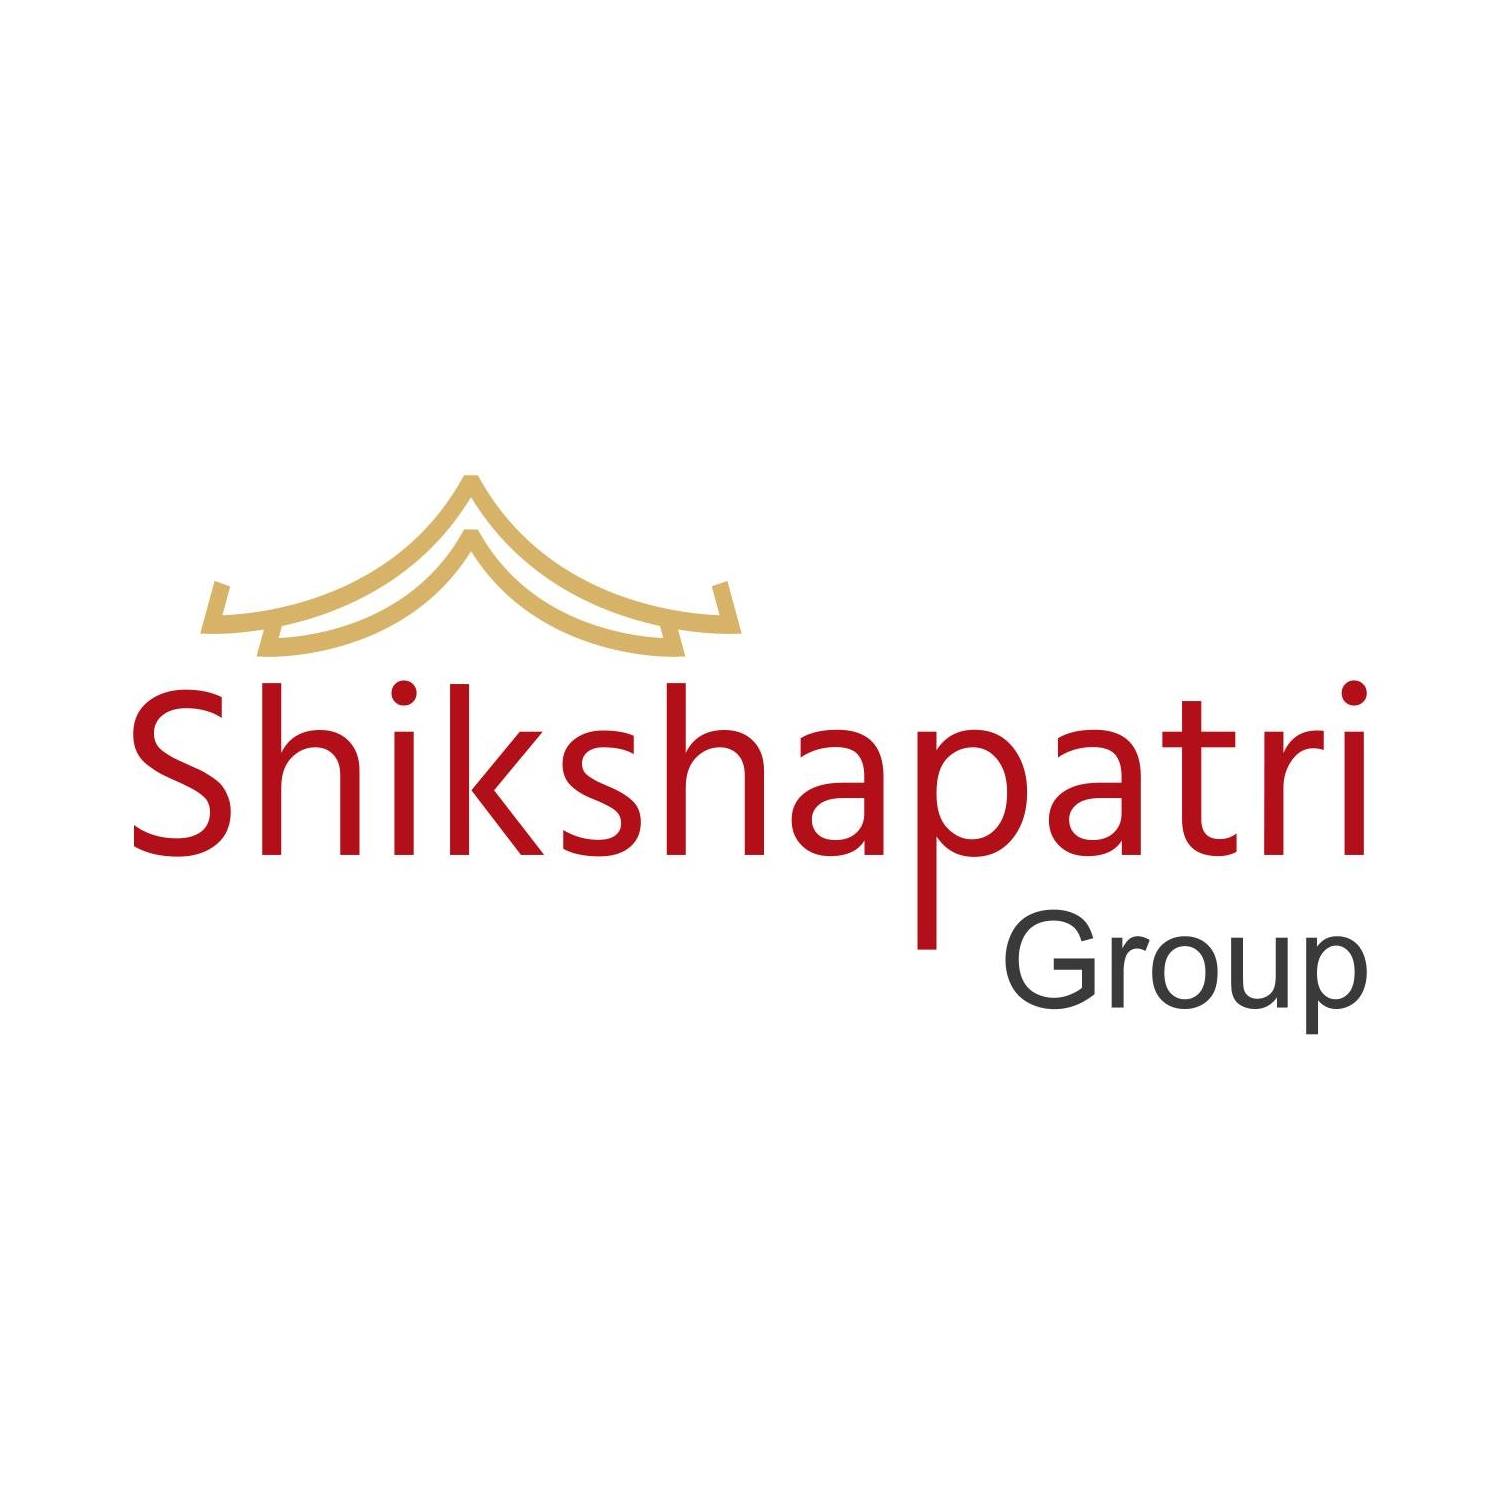 Shikshapatri Group